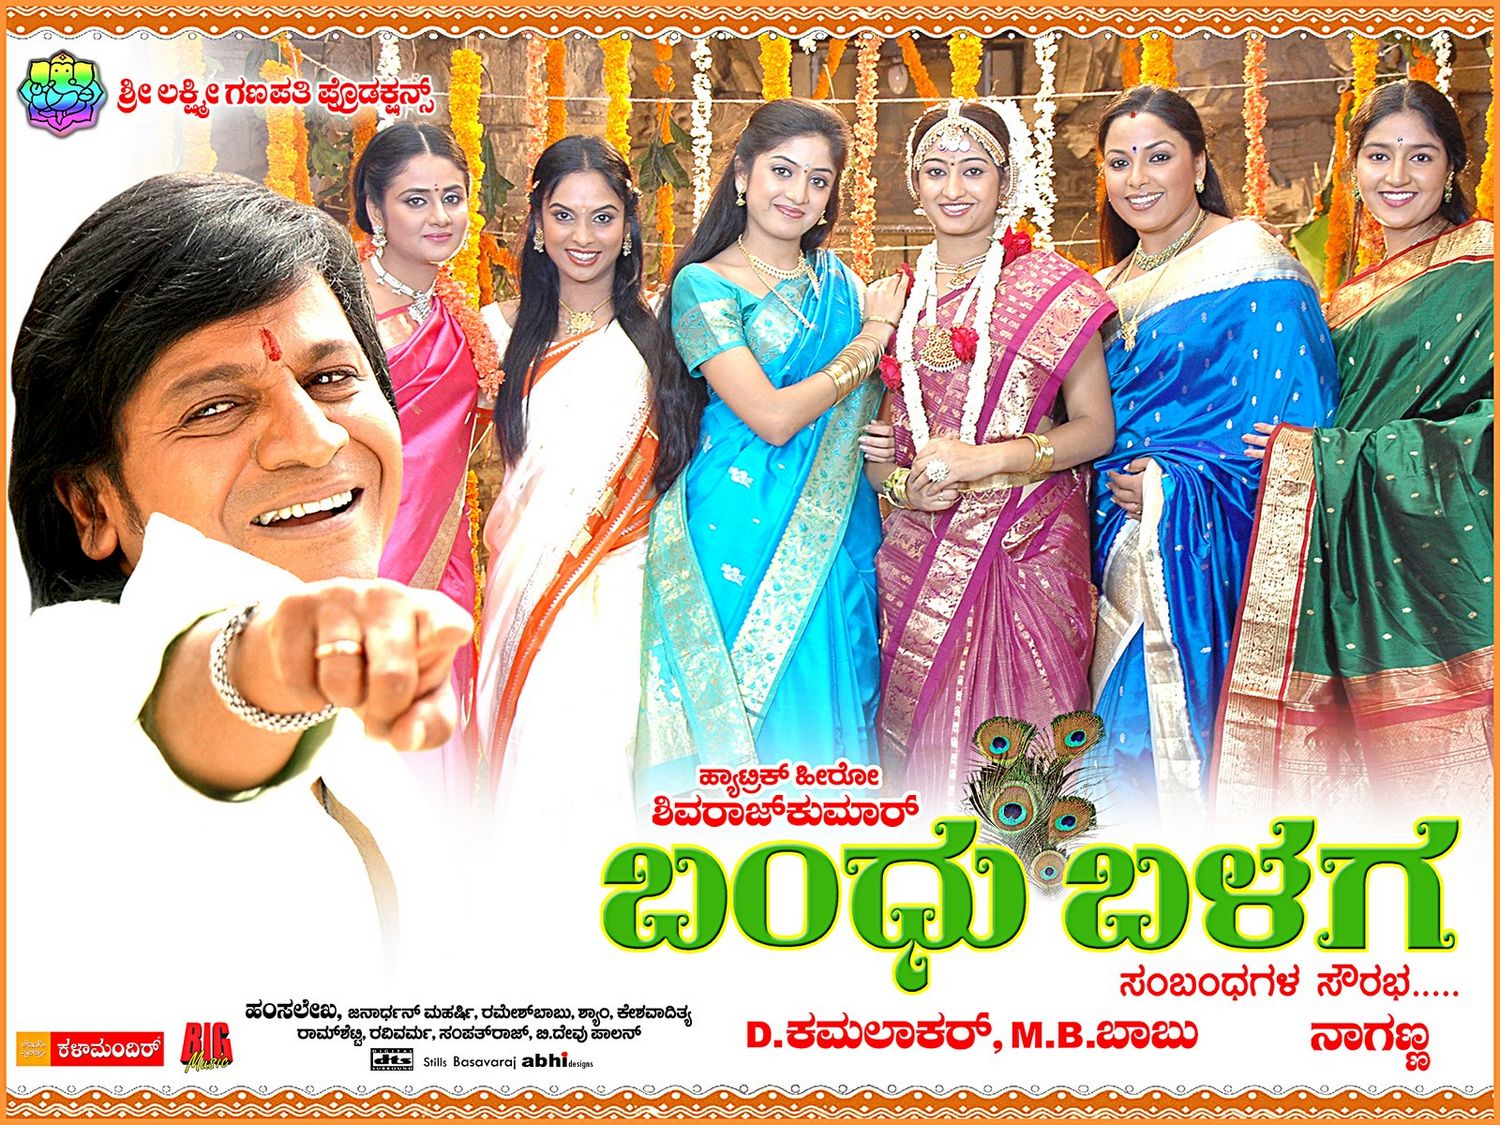 Extra Large Movie Poster Image for Bandu Balaga (#2 of 11)